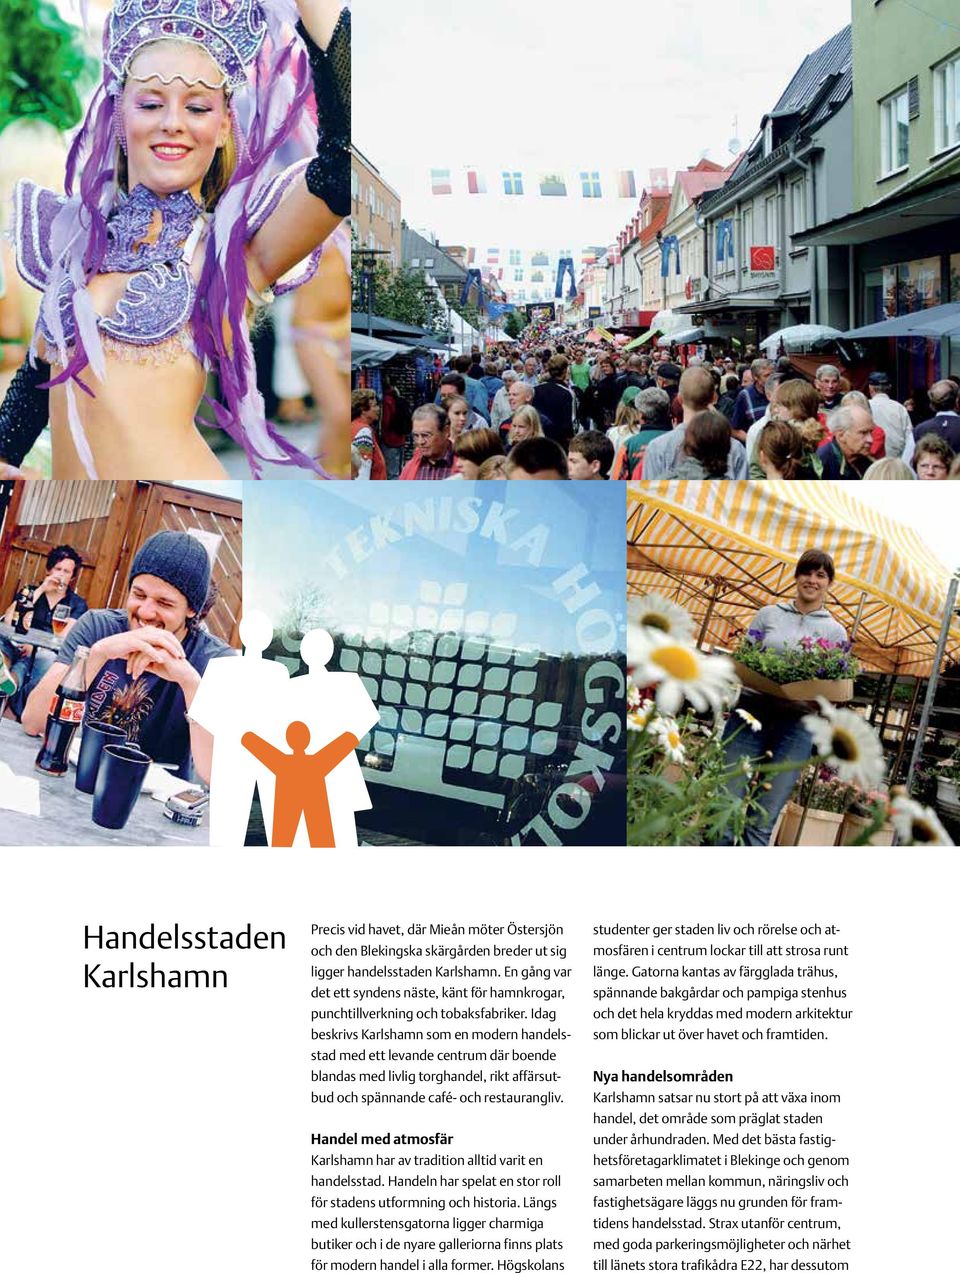 Idag beskrivs Karlshamn som en modern handelsstad med ett levande centrum där boende blandas med livlig torghandel, rikt affärsutbud och spännande café- och restaurangliv.